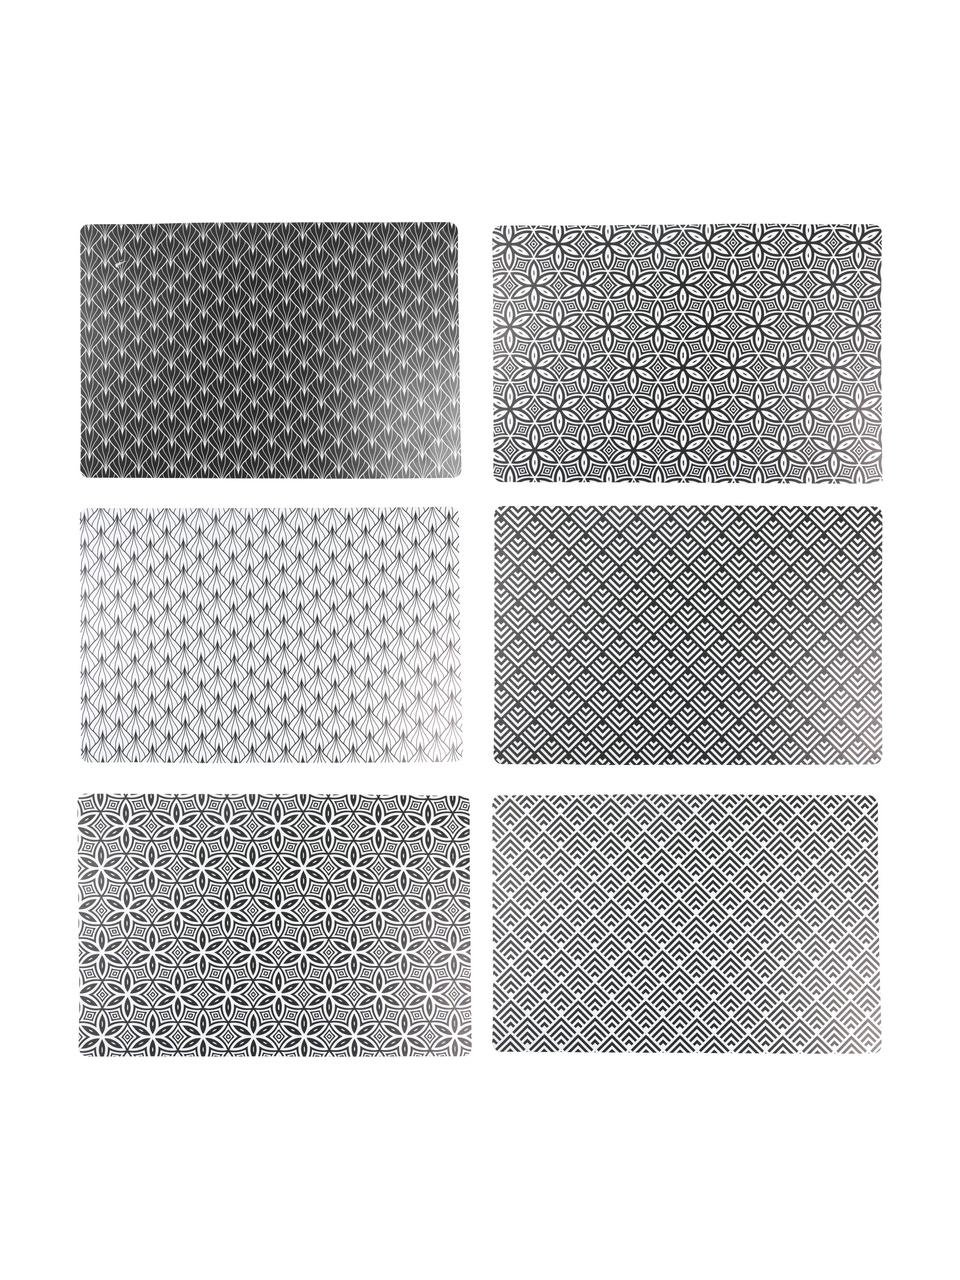 Kunststoff-Tischsets Deco Life, 6er Set, PVC-Kunststoff, Schwarz, Grau, B 30 x L 45 cm